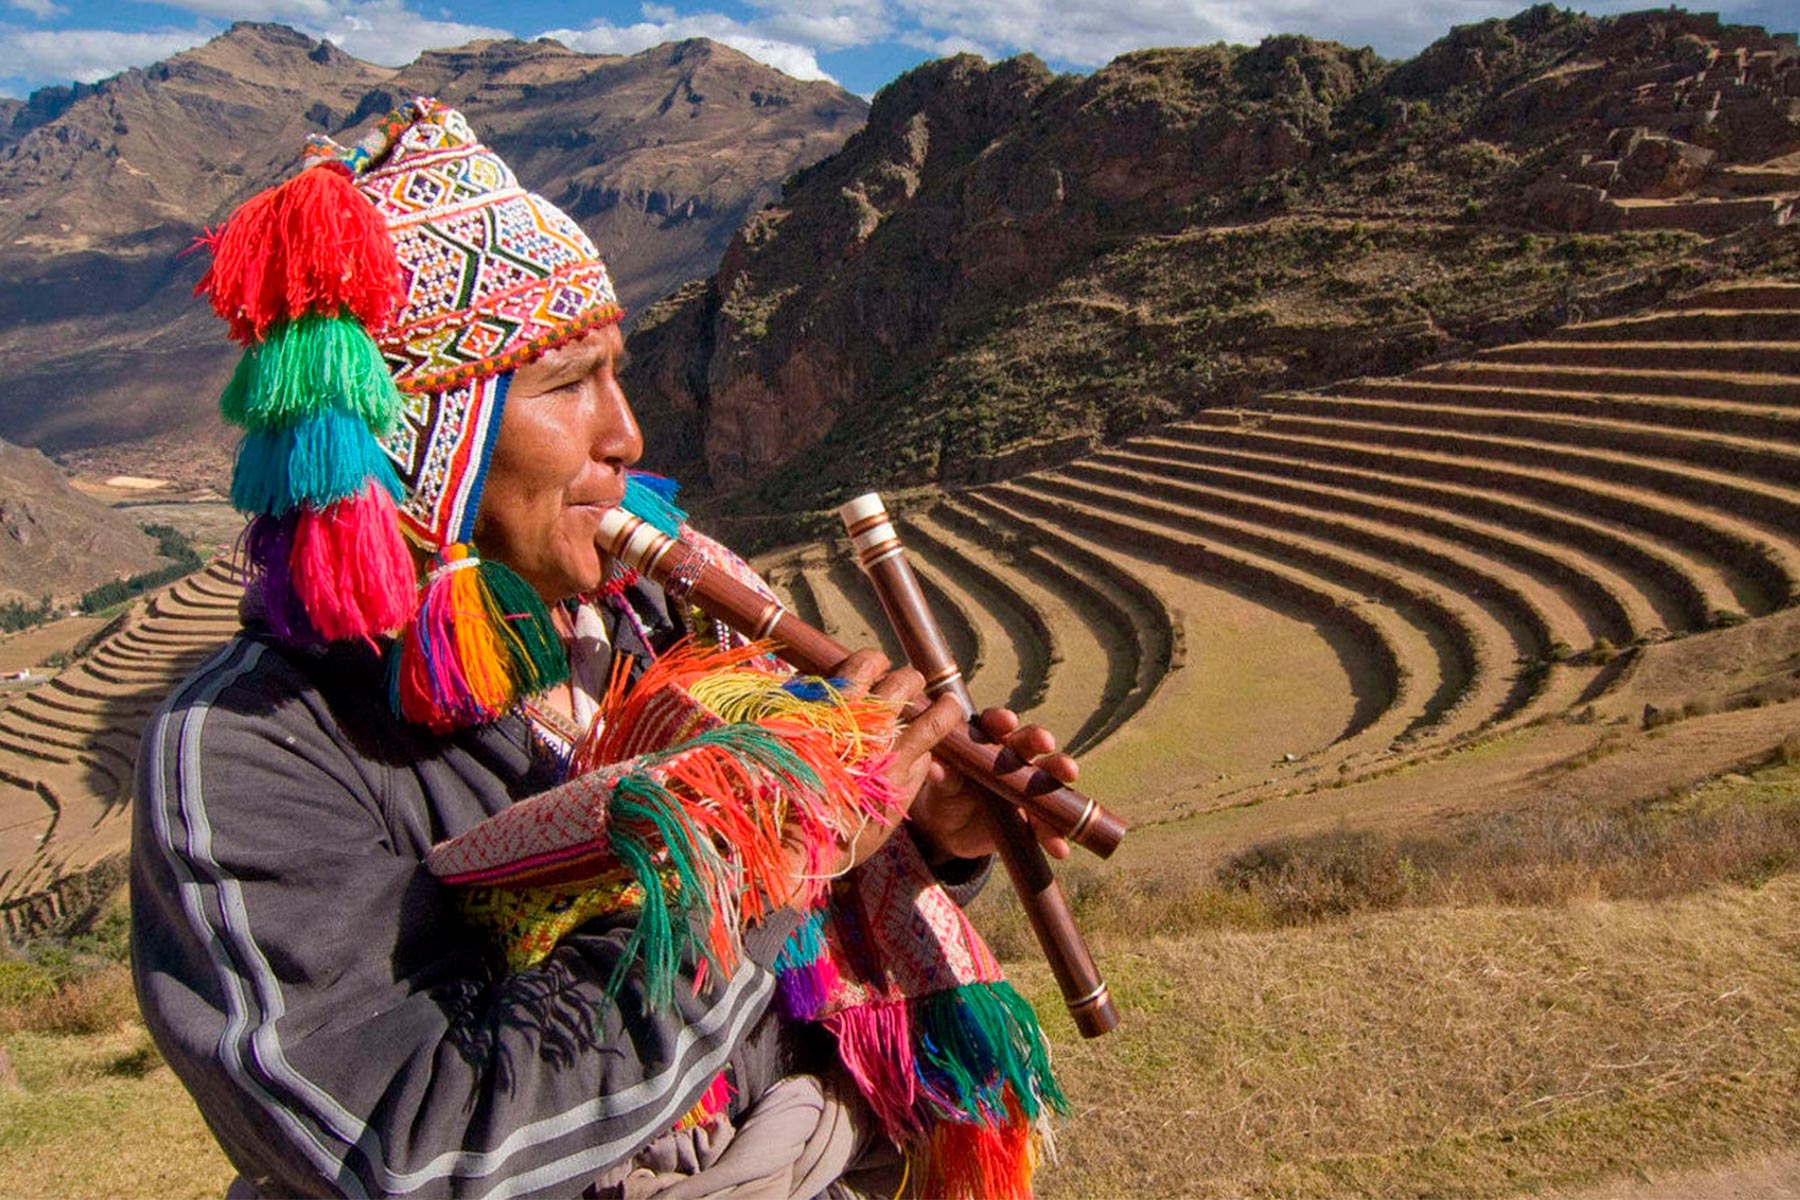 Культура и быт южной америки. Индейцы кечуа в Перу. Население Перу перуанцы. Тамшияку Перу. Виникунка Перу.